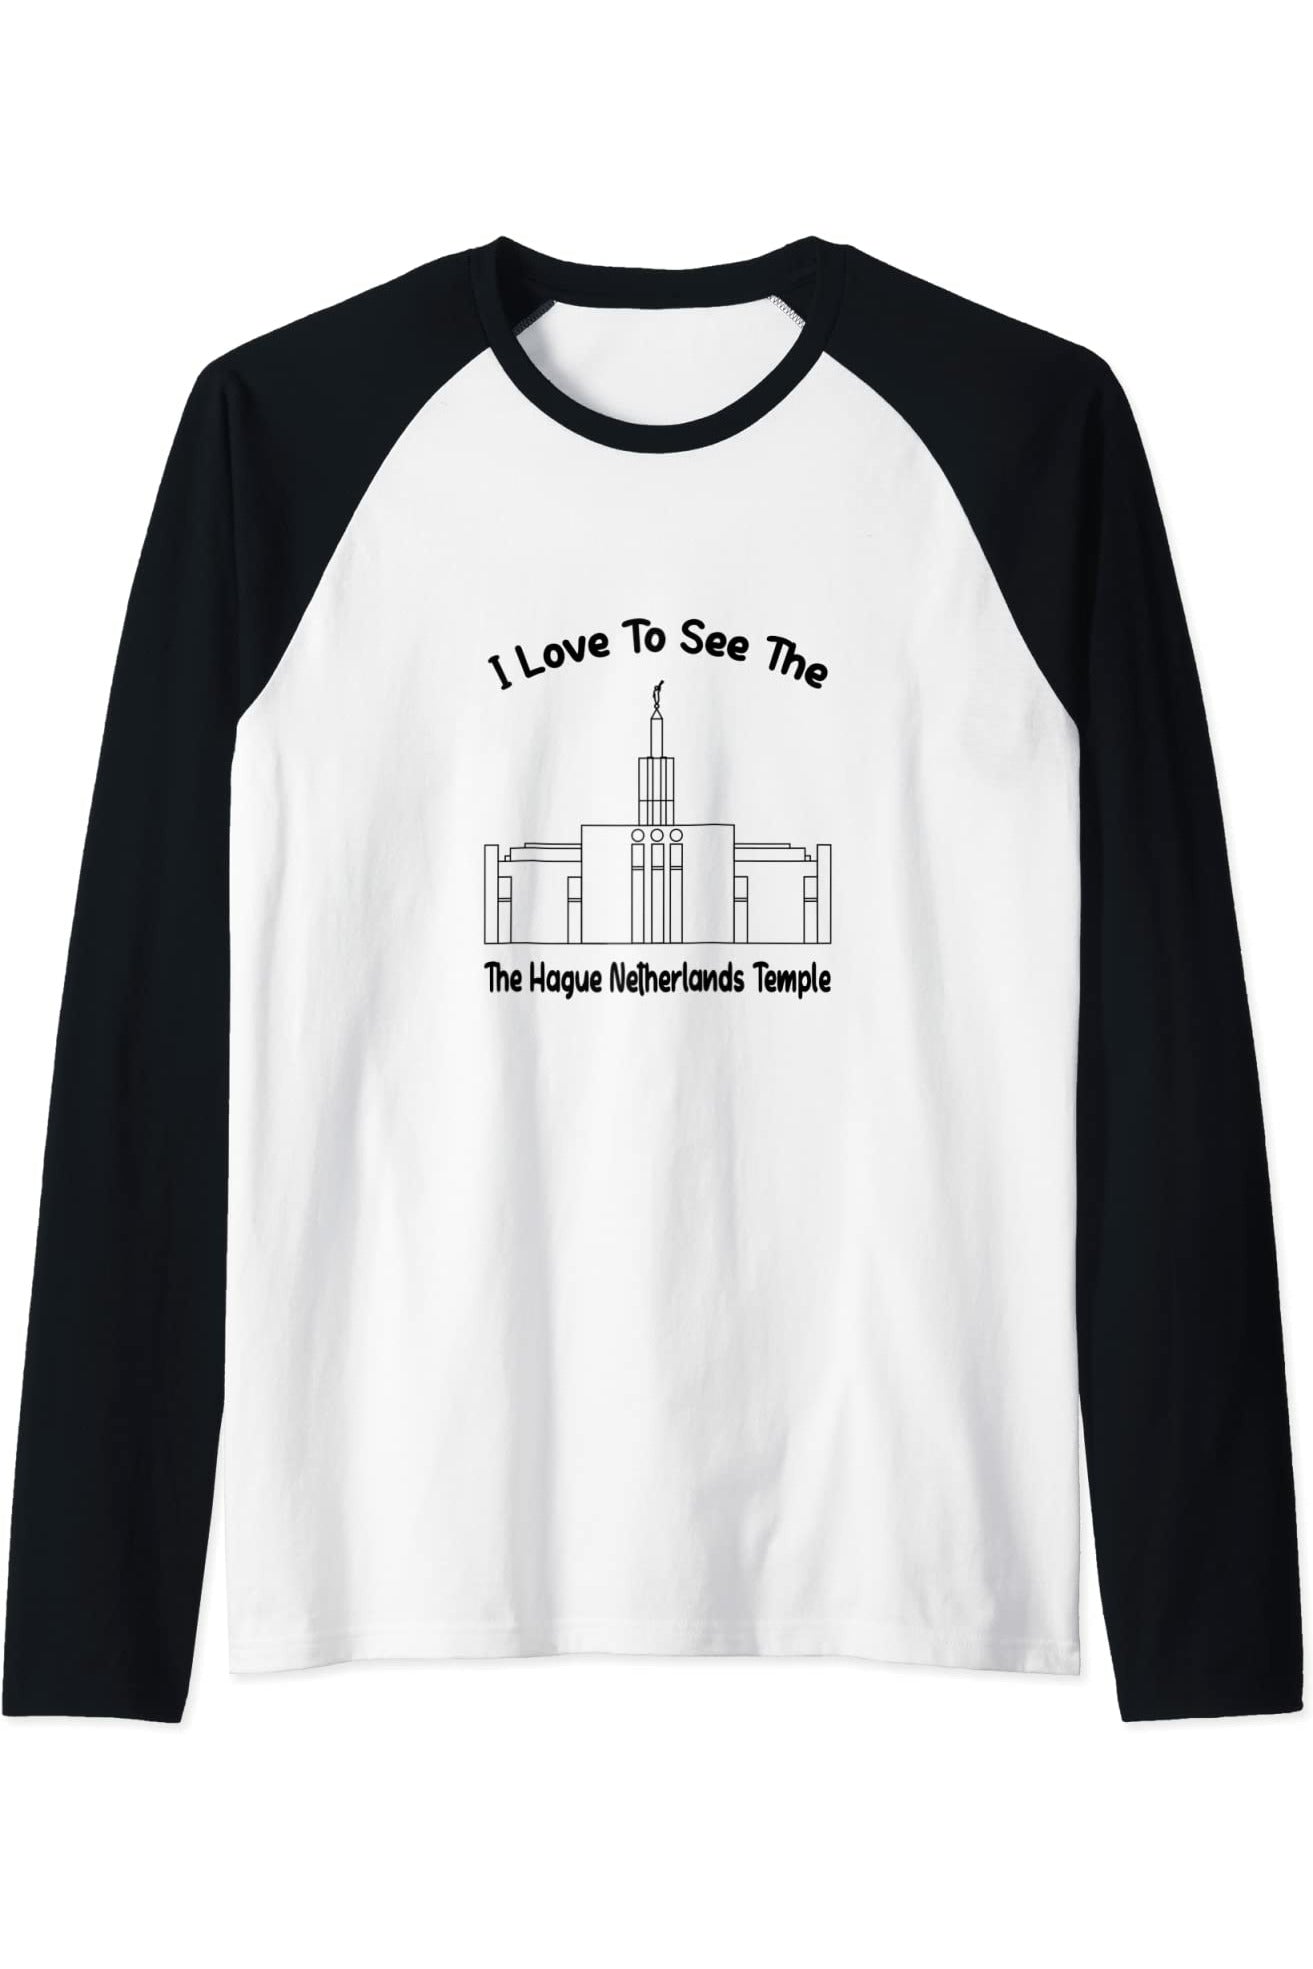 Der Haag Niederlande Tempel, ich liebe meinen Tempel zu sehen, Raglan T-Shirt